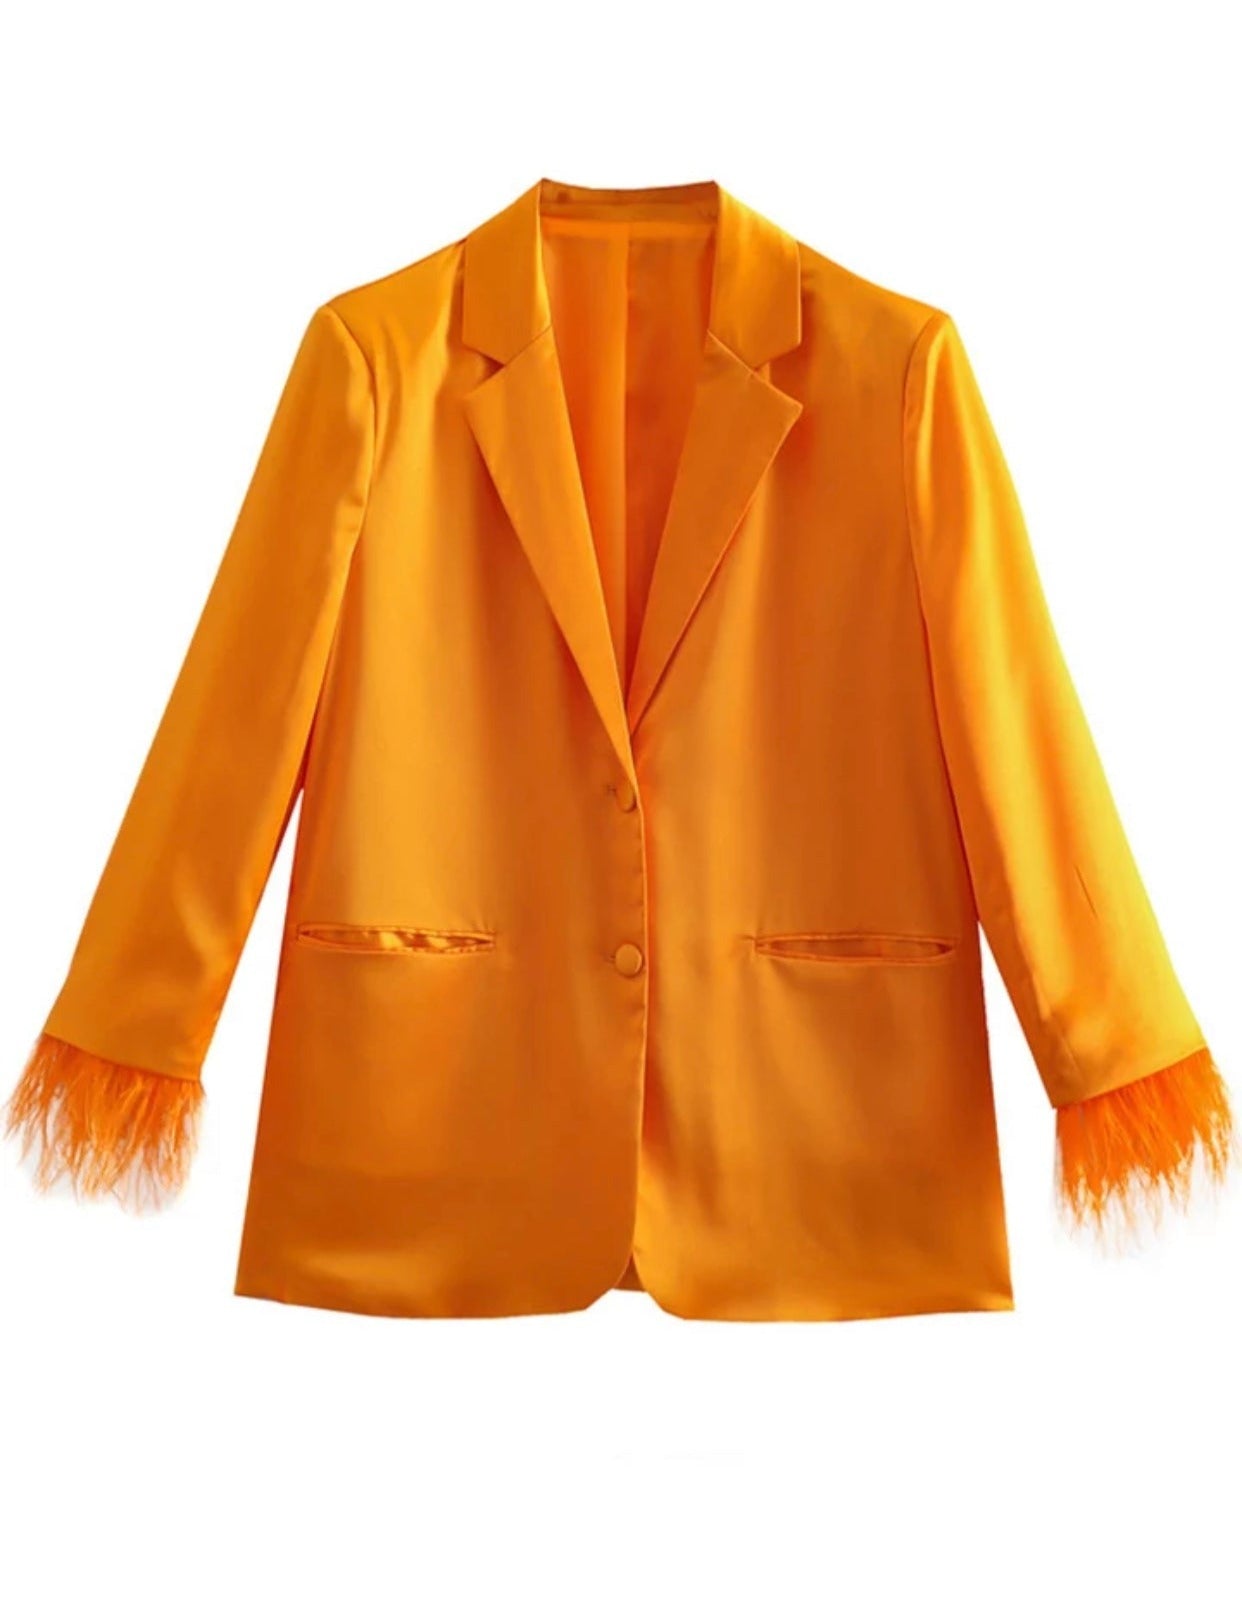 Tulia Orange Feathered Blazer